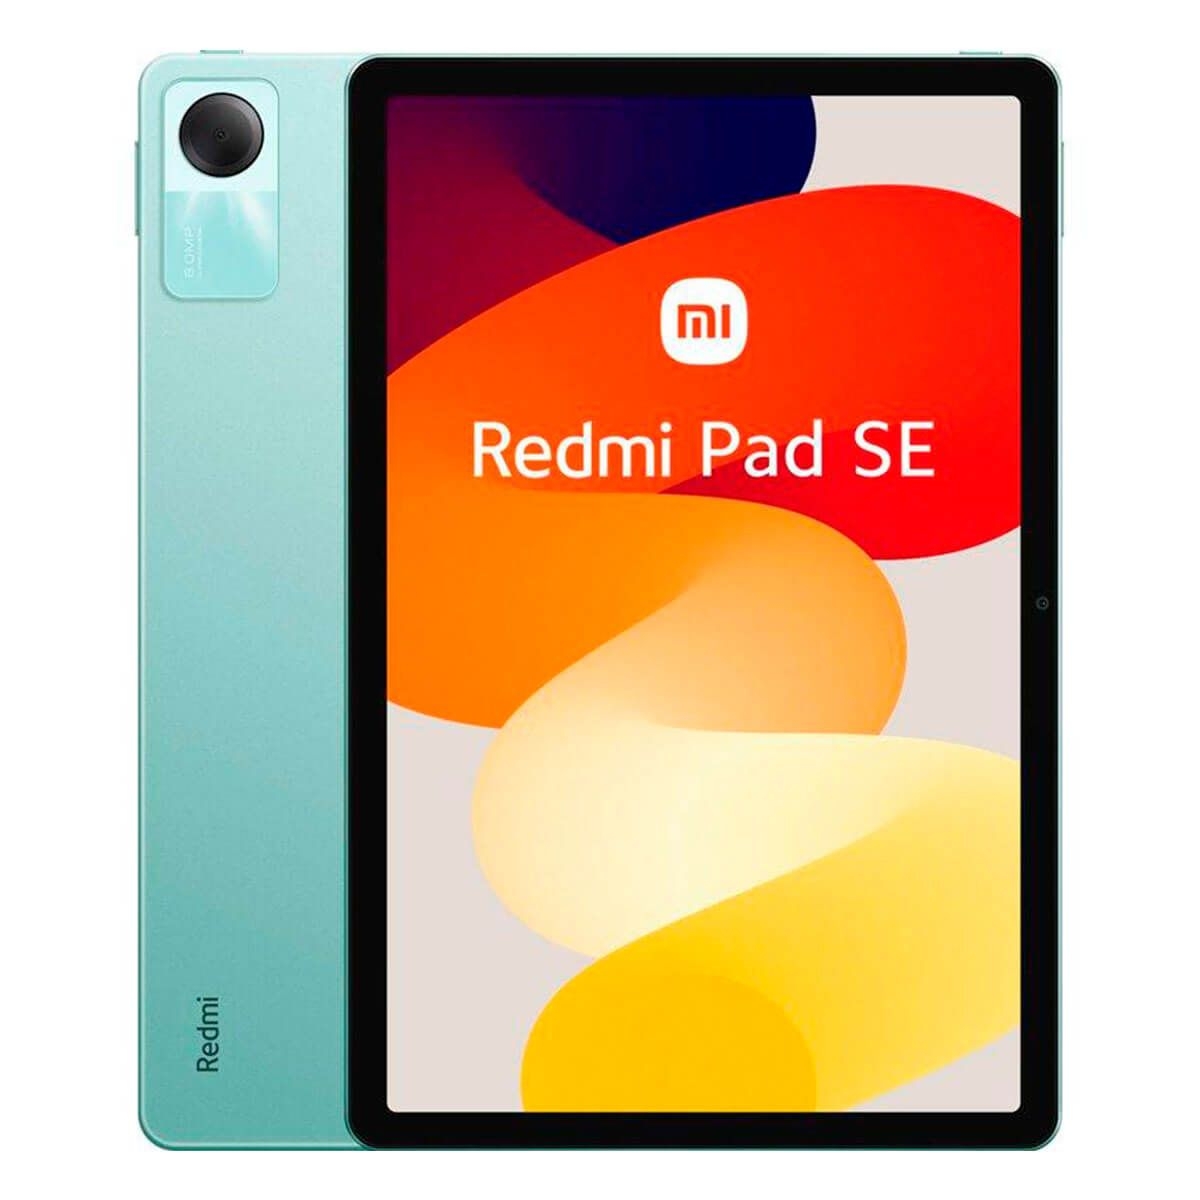 Xiaomi Redmi Pad SE WiFi 256GB 8GB RAM Green, price in Europe